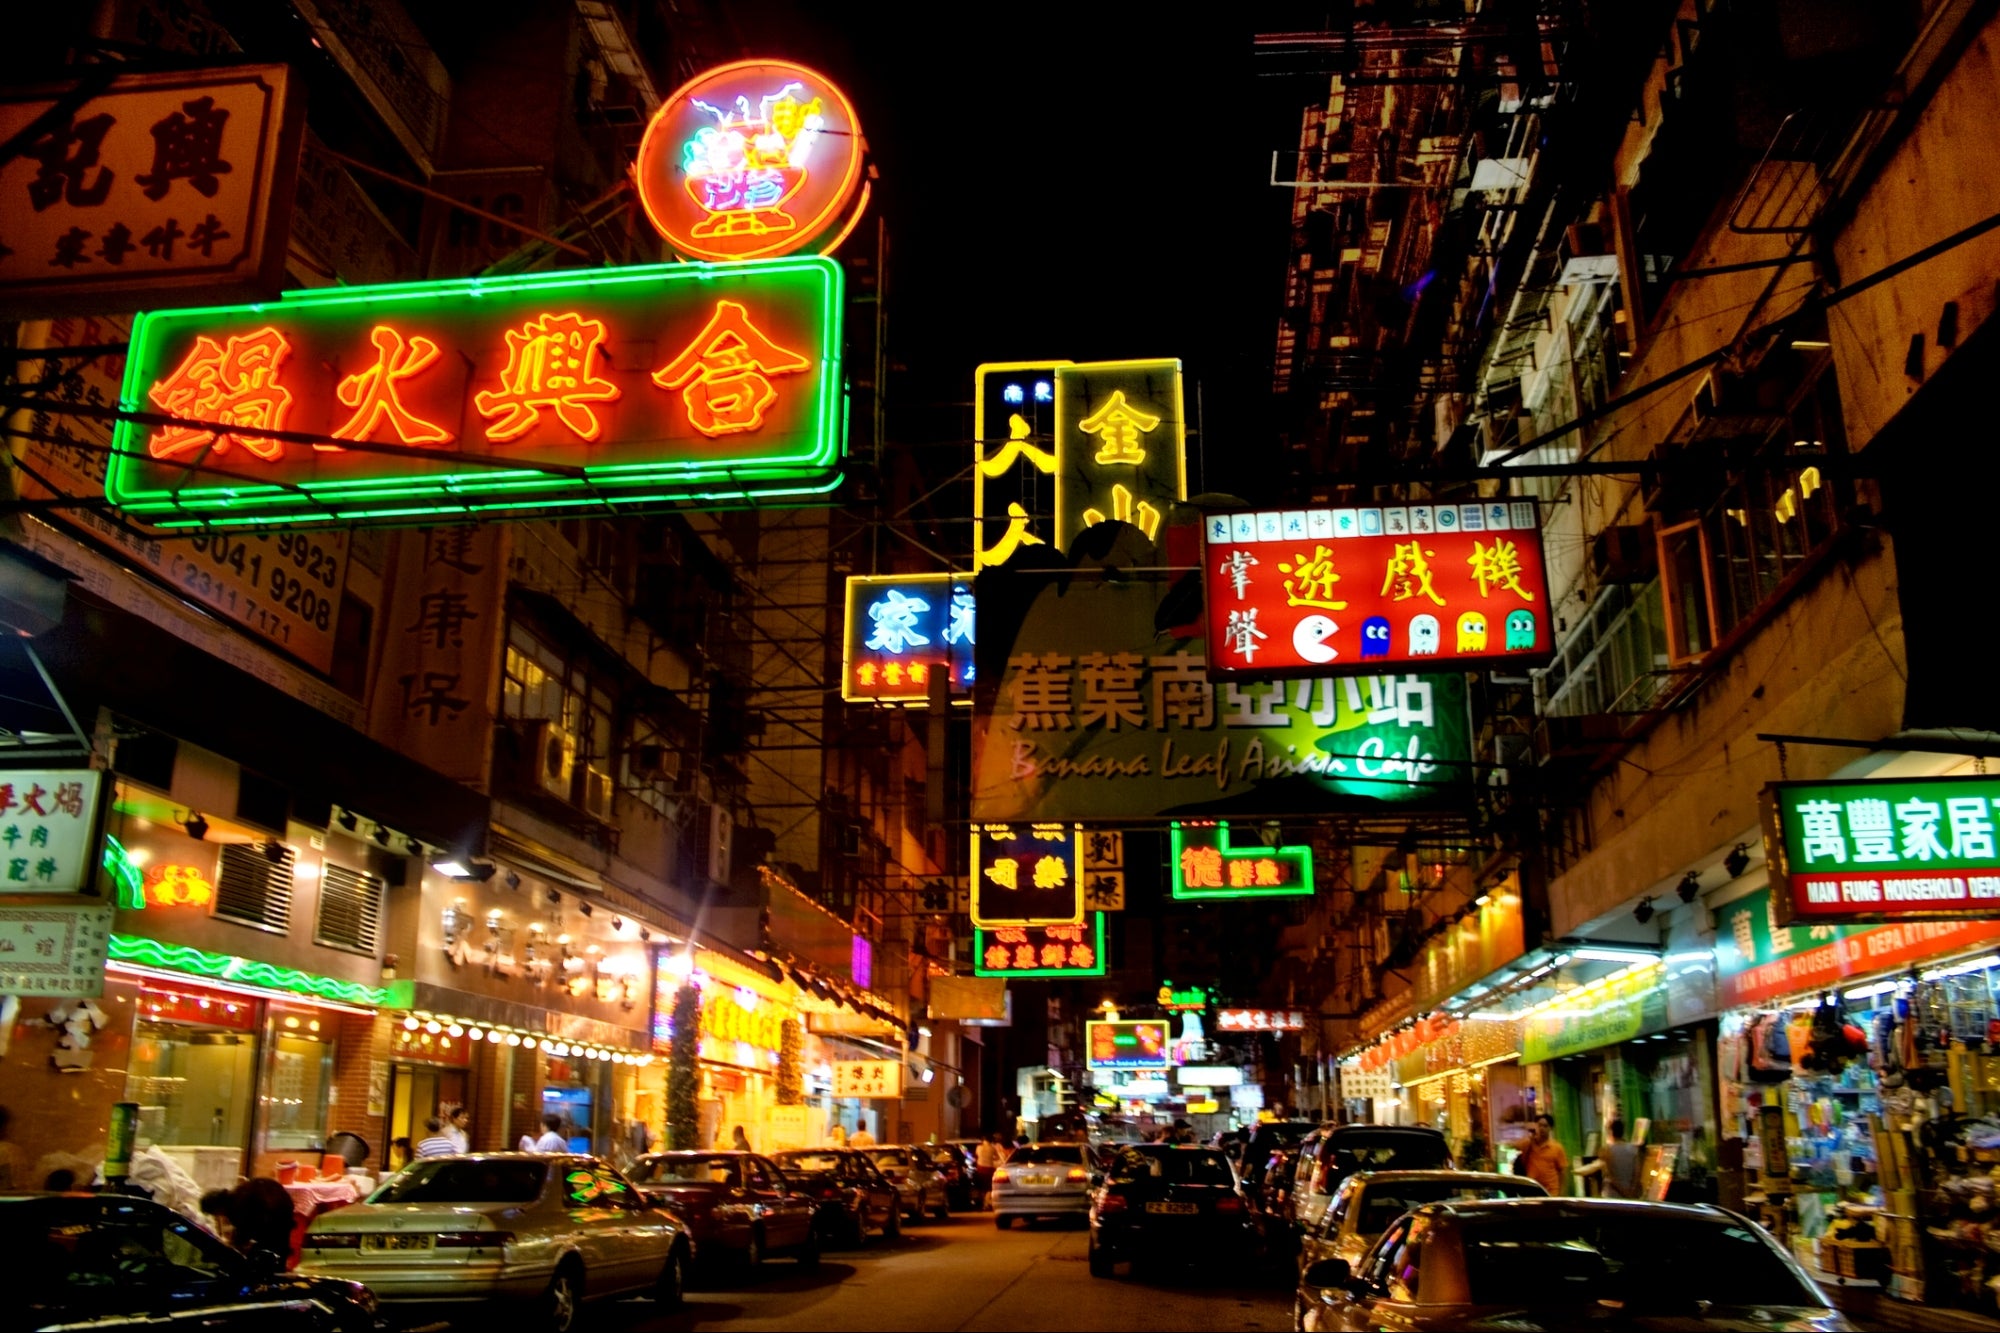 Hong Kong Gets Its First Cannabis Restaurant